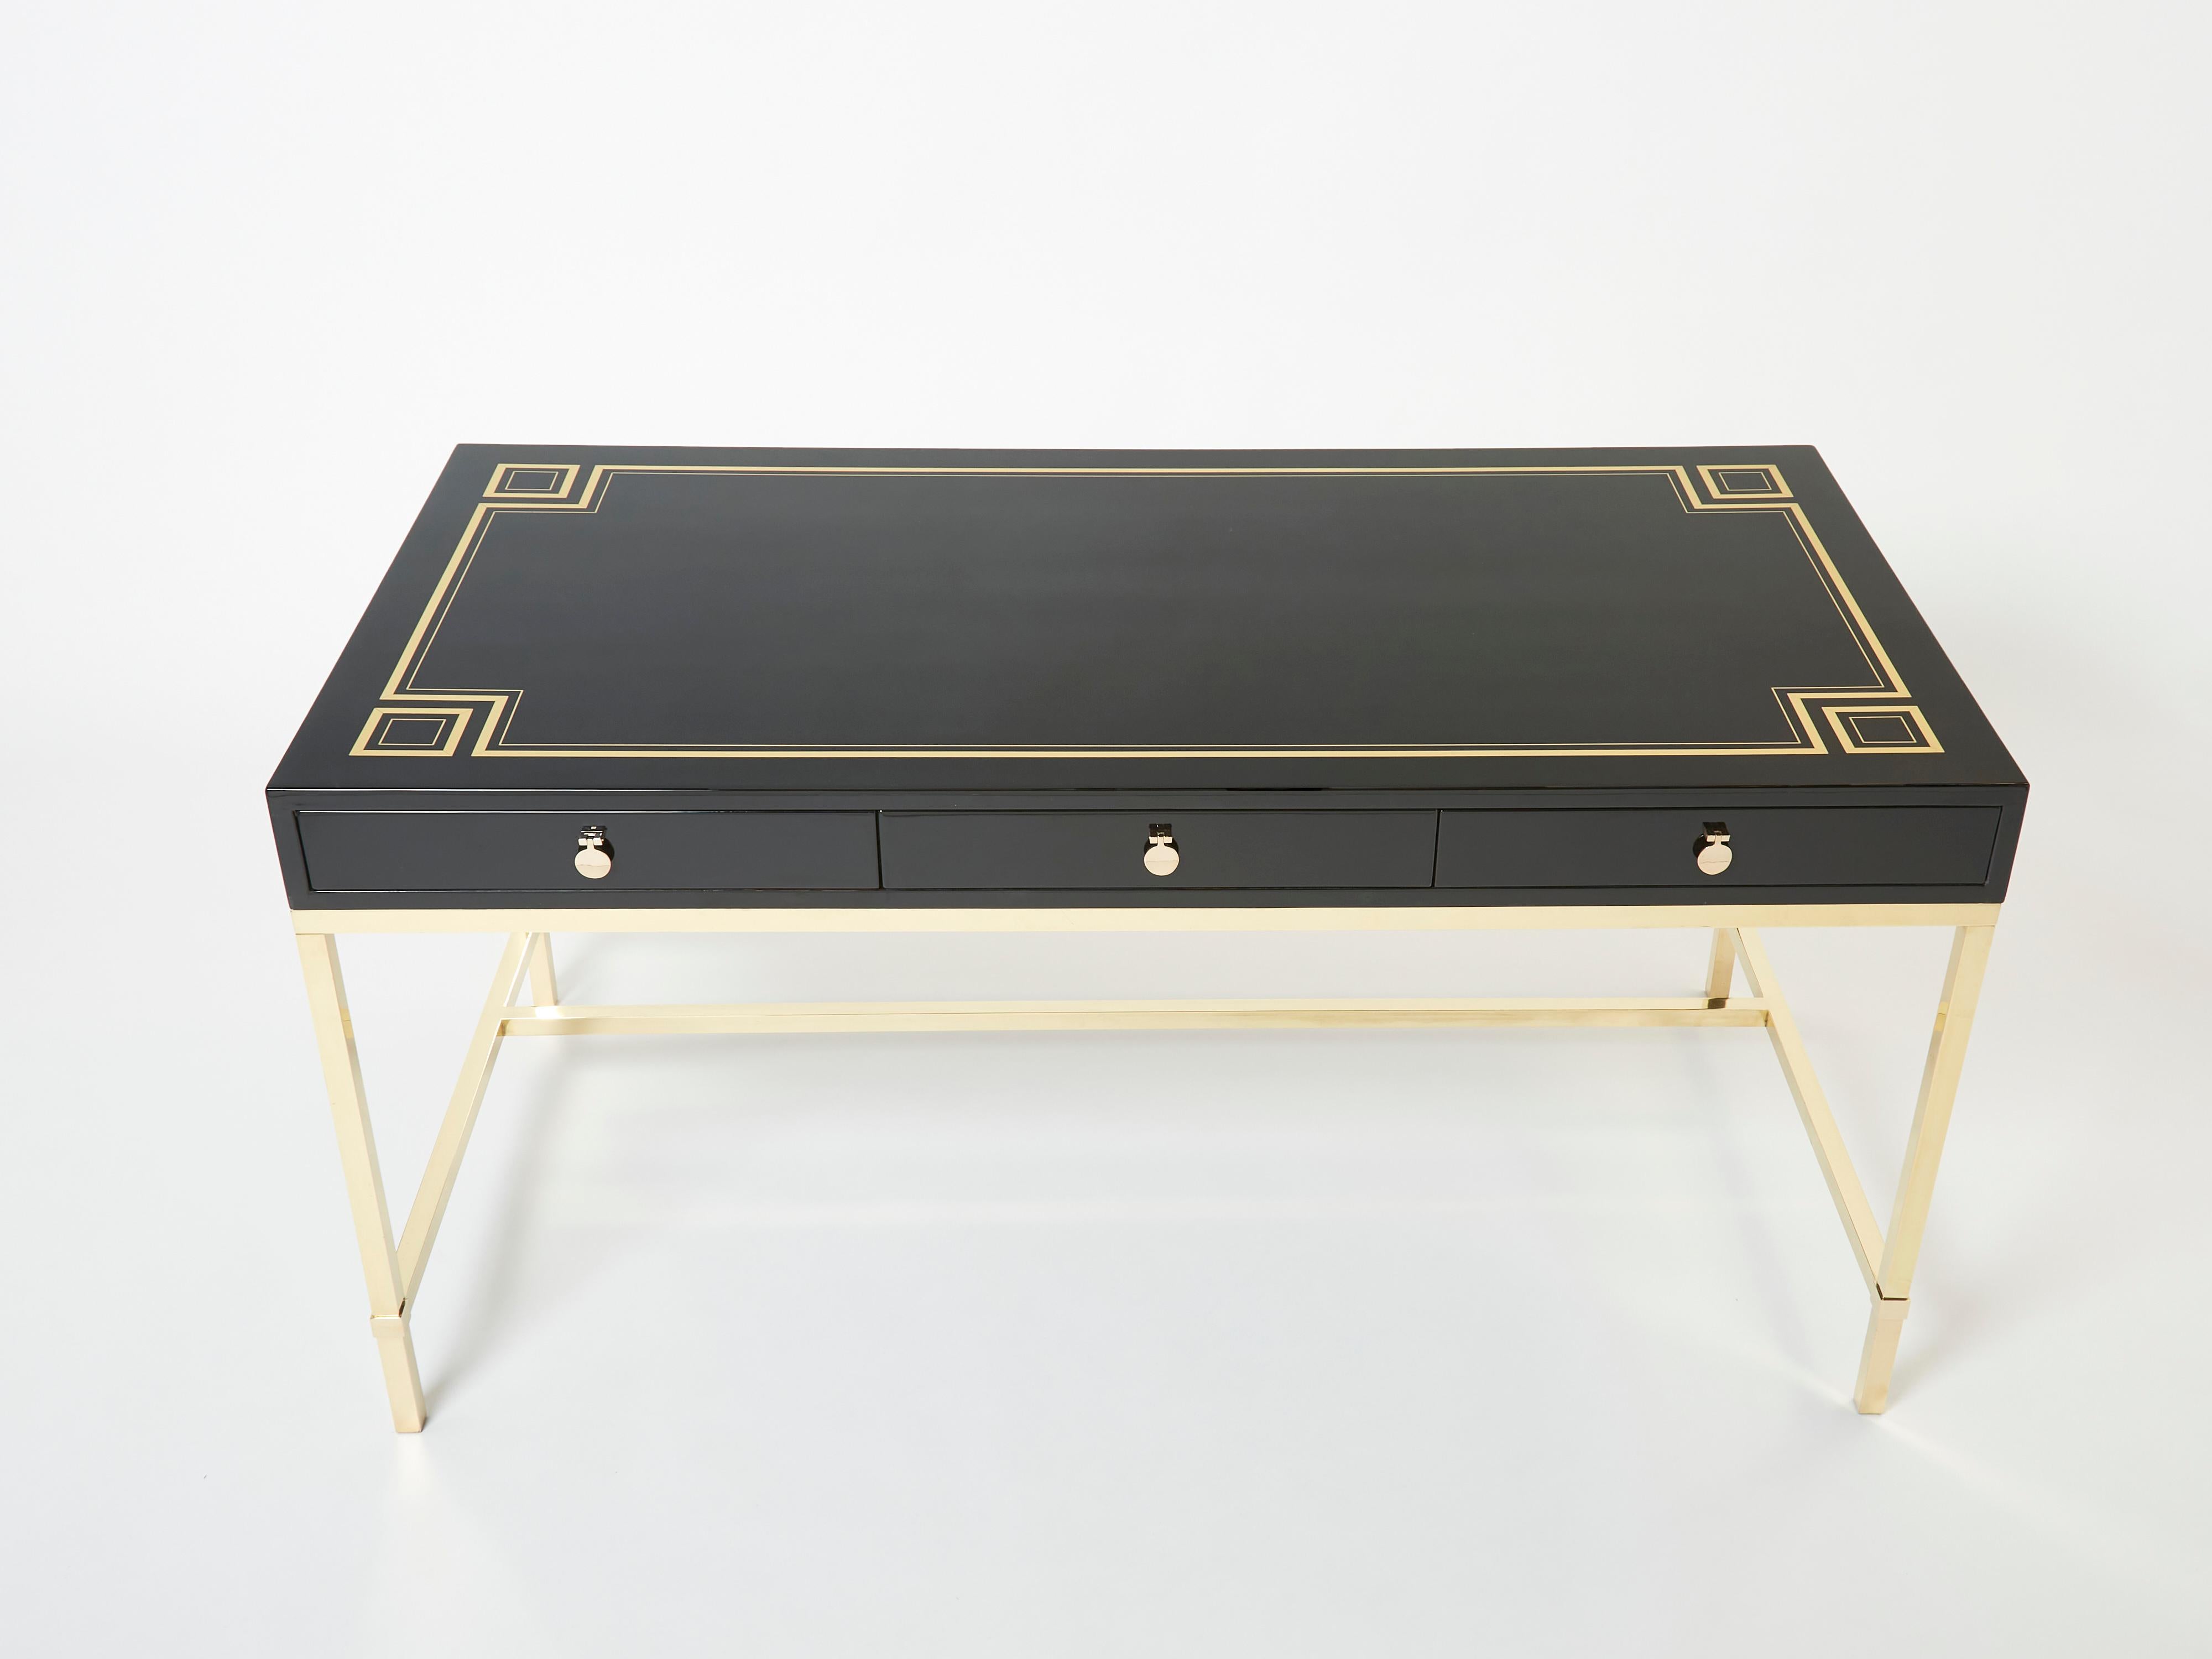 Ein einzigartiger, schwarz lackierter Schreibtisch von Maison Jansen, entworfen von Guy Lefevre für Maison Jansen Mitte der 1970er Jahre. Es verfügt über eine schwarz lackierte Platte mit neoklassisch inspirierten Messingeinlagen und drei Schubladen